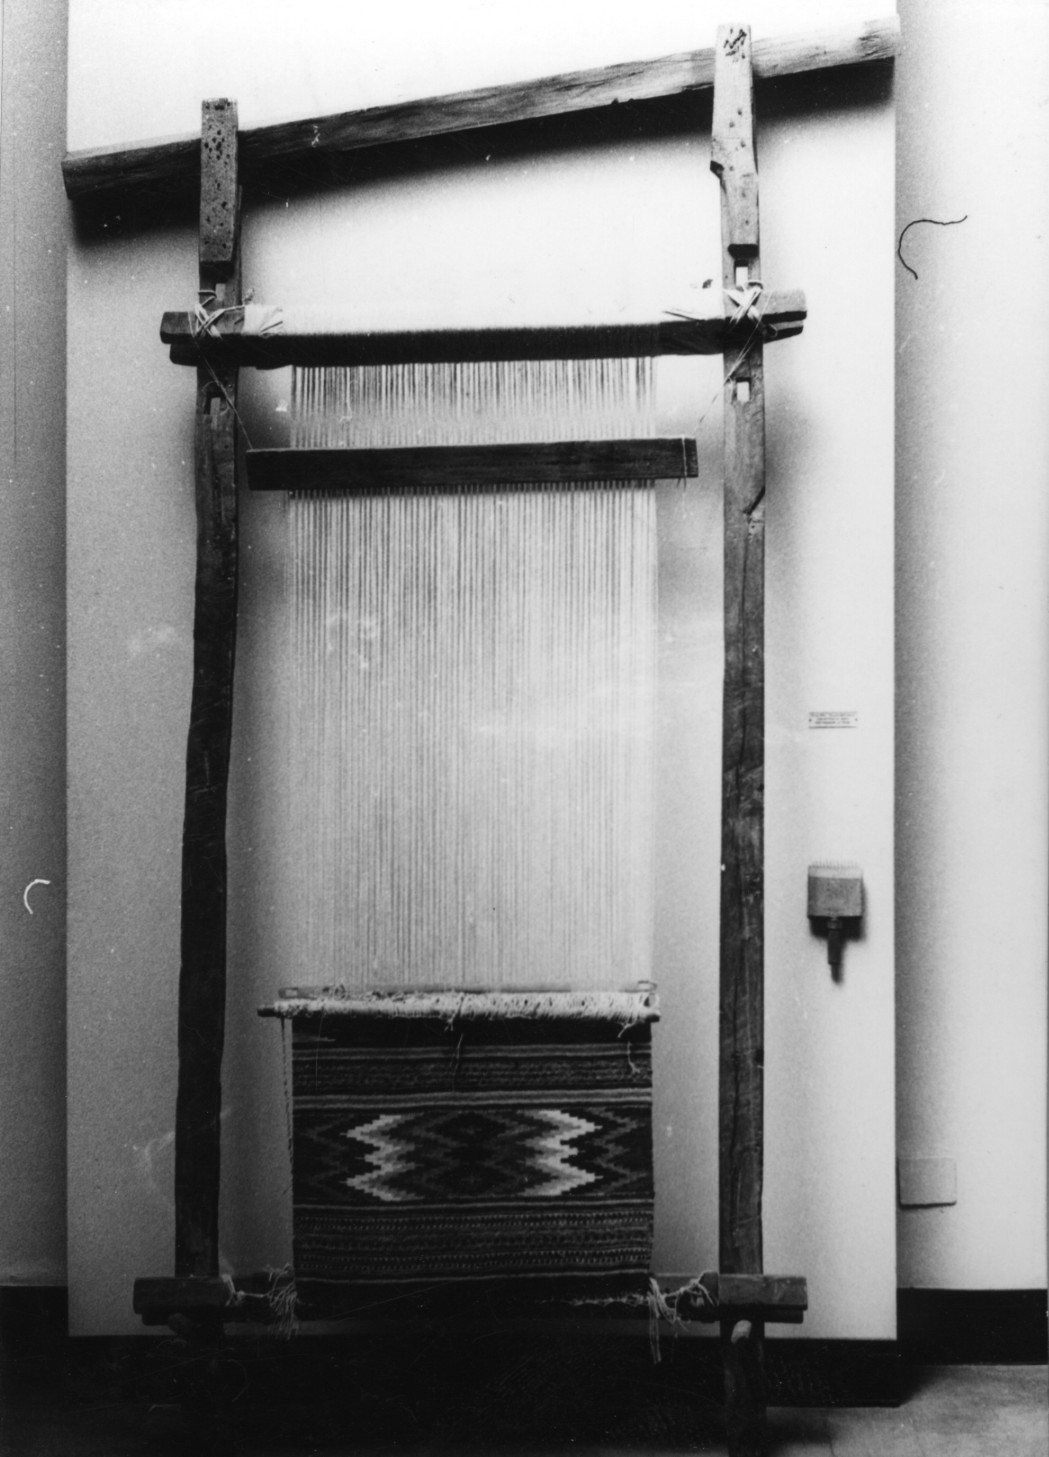 telaio verticale, macchine per tessitura - produzione sarda (sec. XIX)